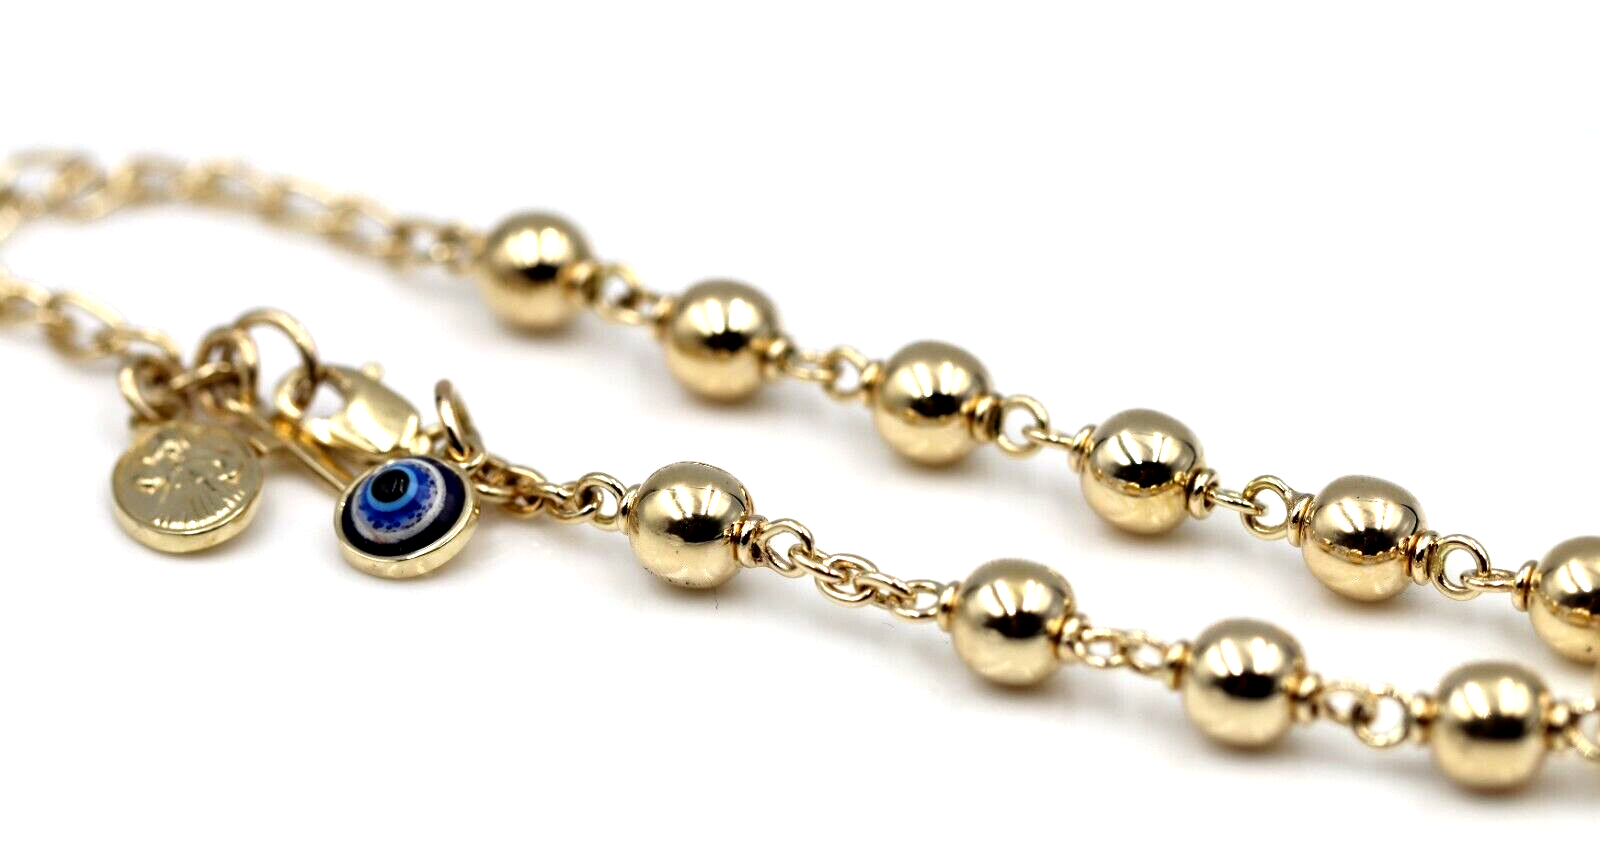 enewton Honesty Gold Sincerity Pattern Bead Bracelet -6mm – Mint Juleps Shop